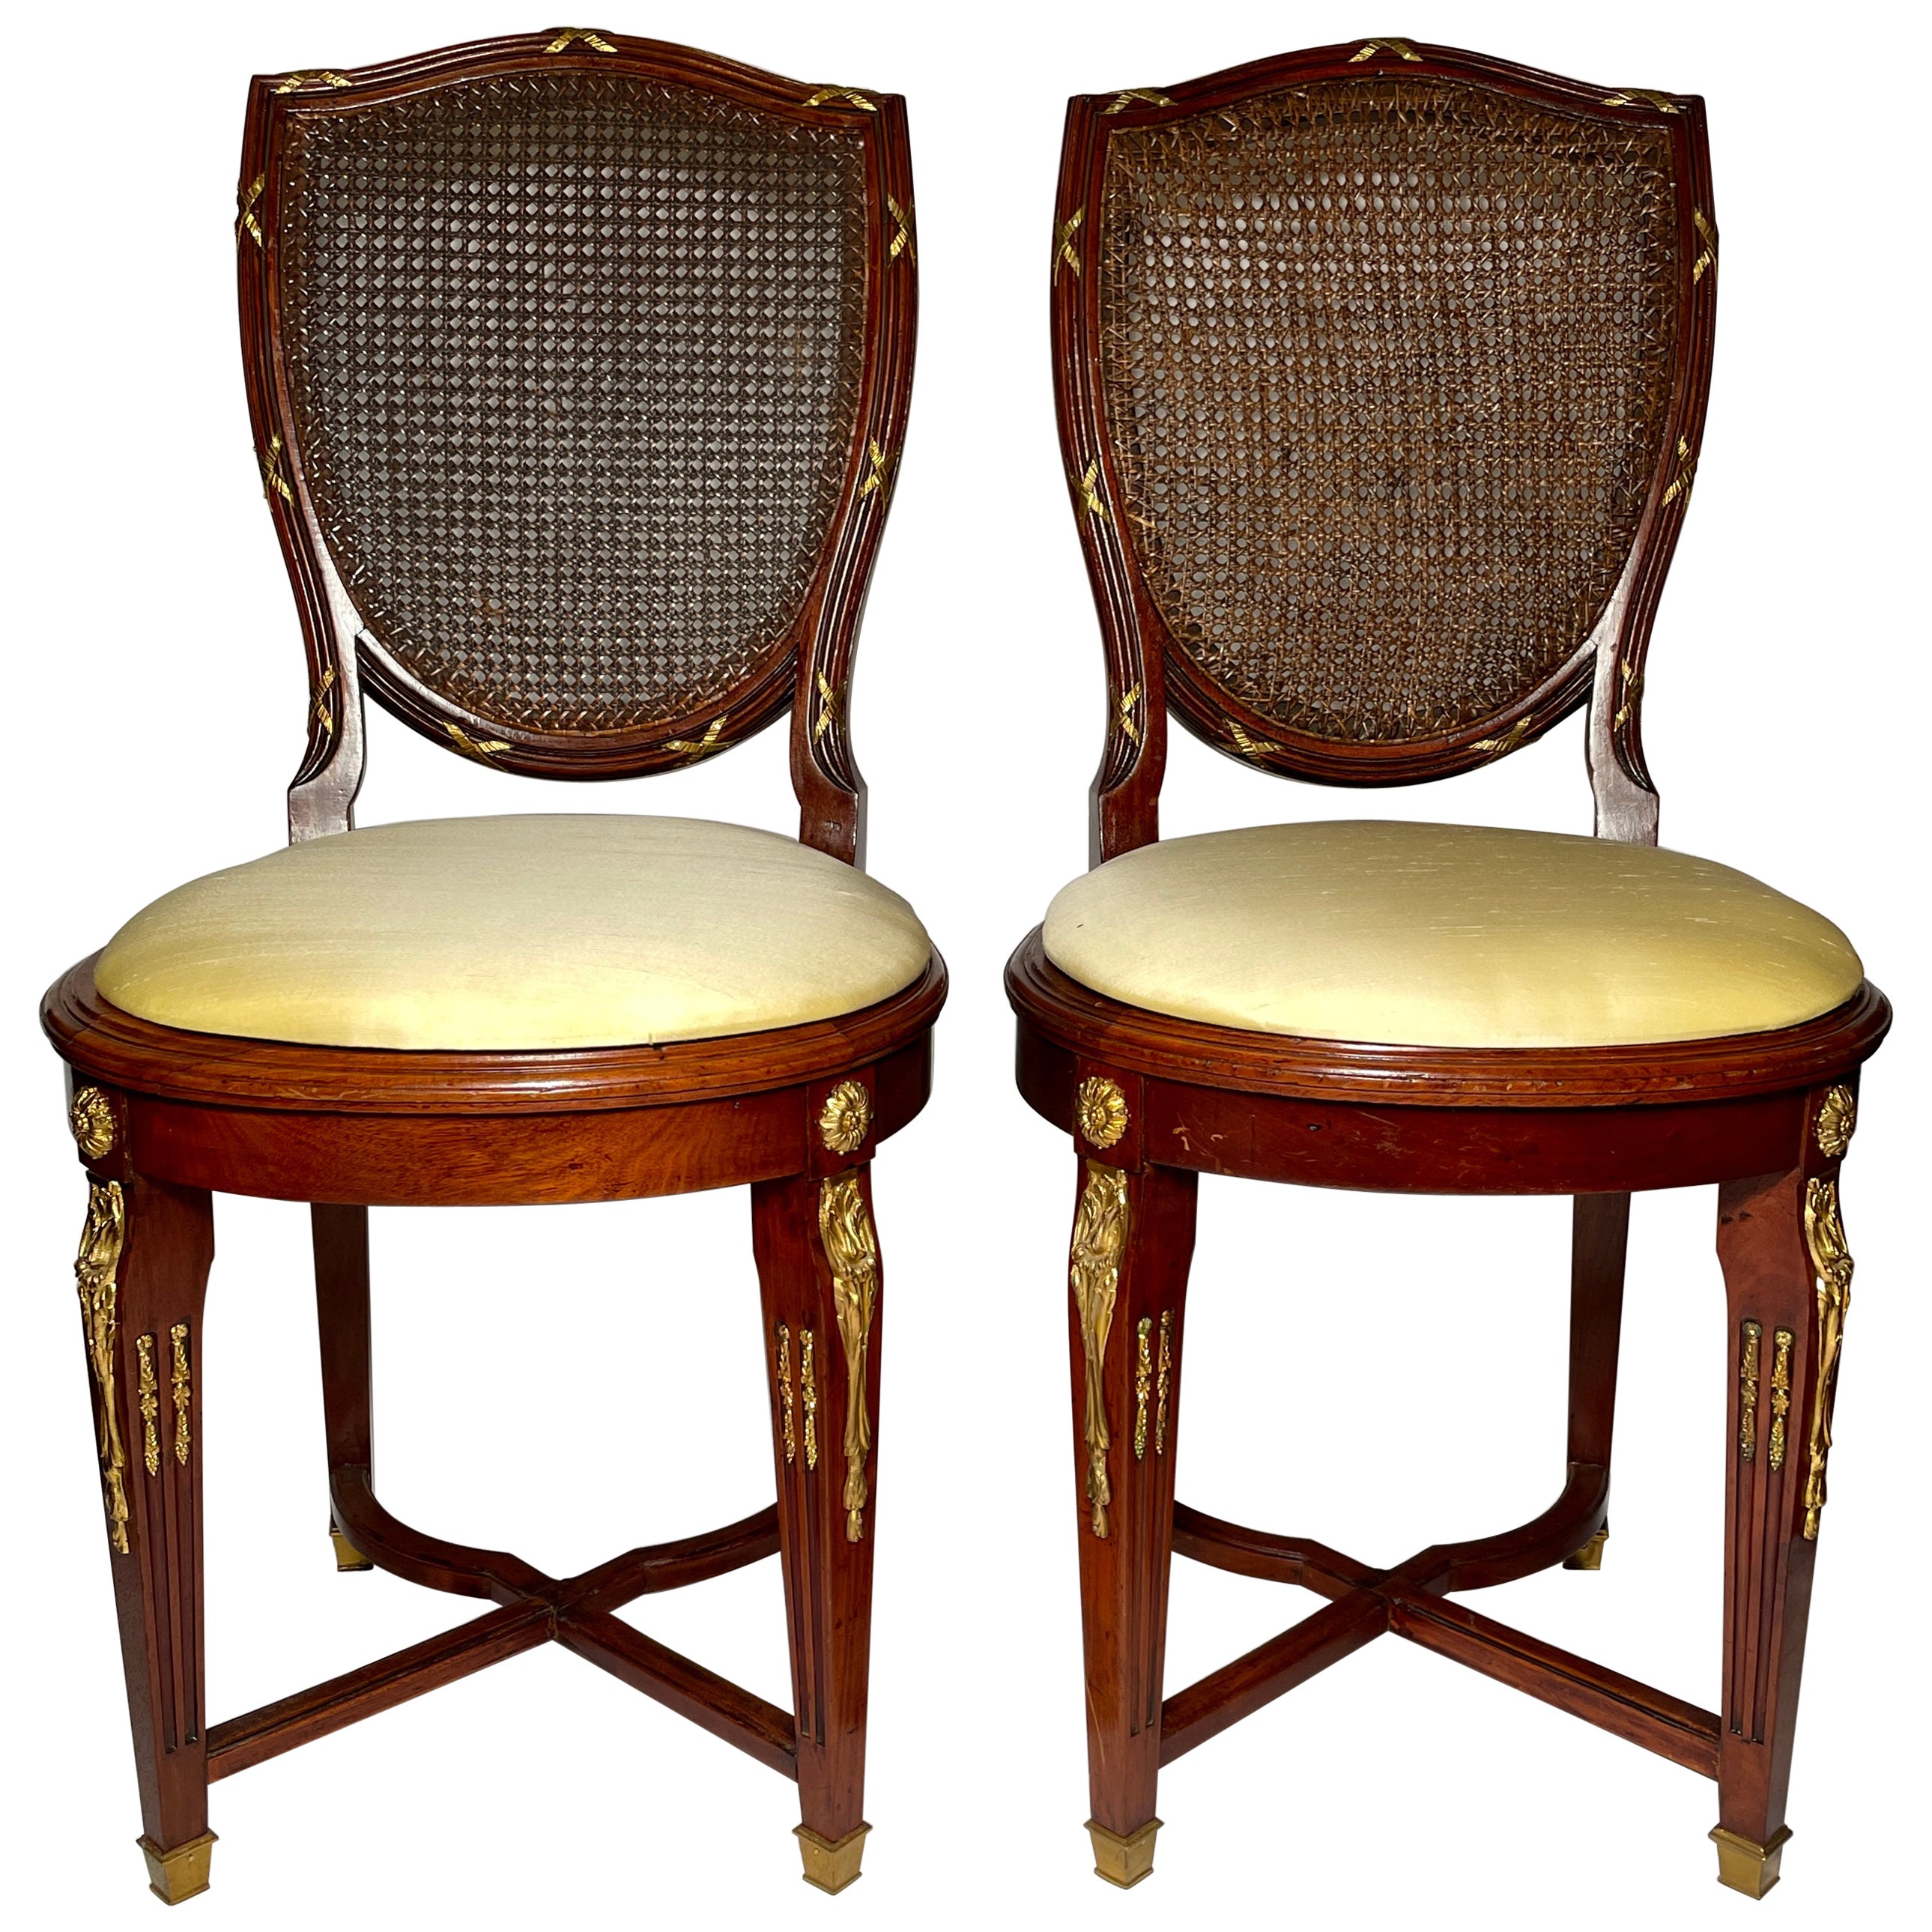 Paire d'anciennes chaises Louis XVI françaises à dossier canné en acajou montées sur bronze doré